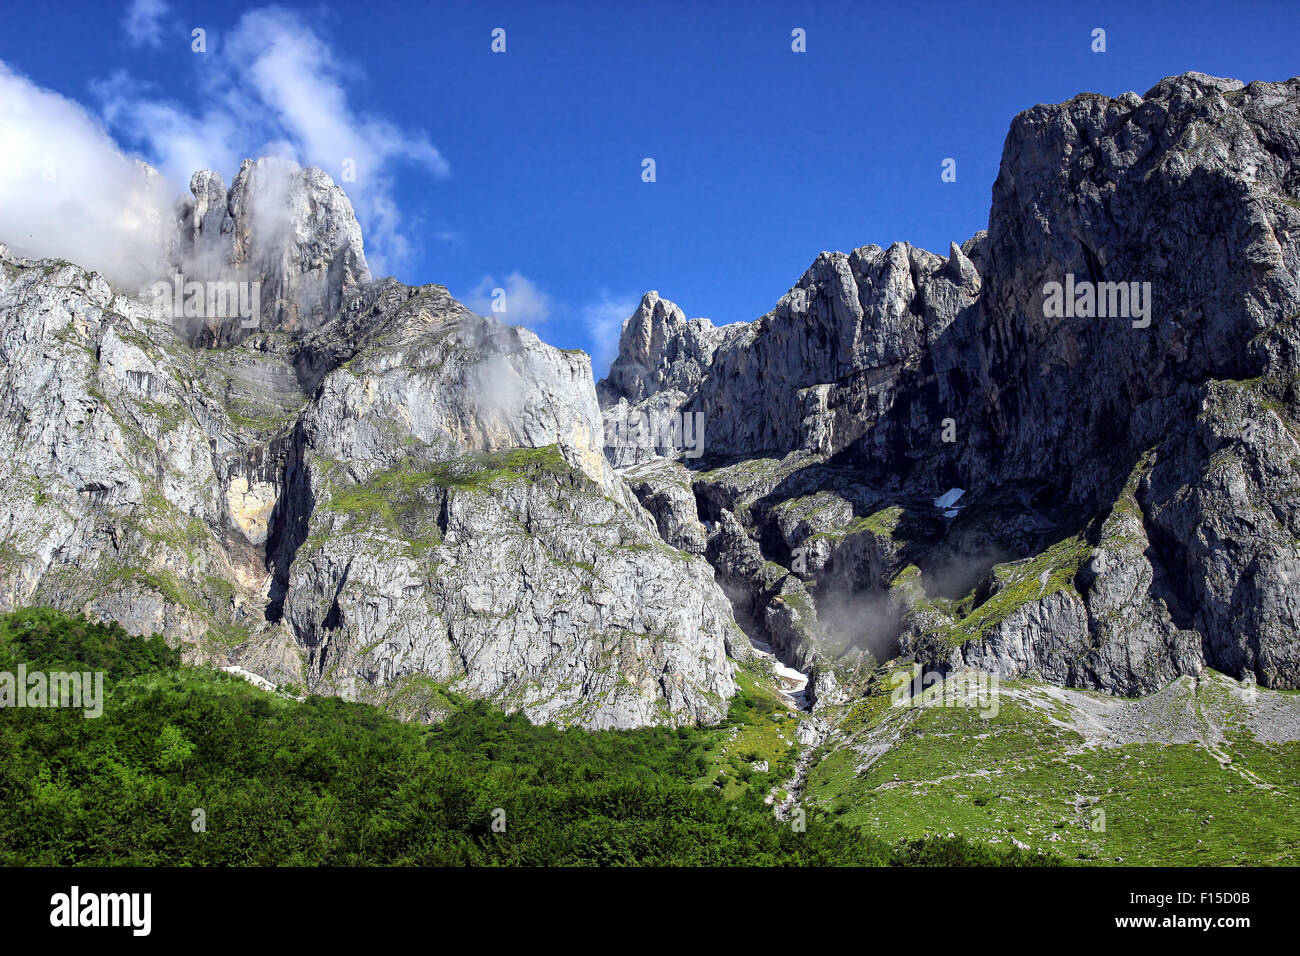 The alpine mountain tops of Picos De Europa, Cantabrian Mountains, Spain. Stock Photo